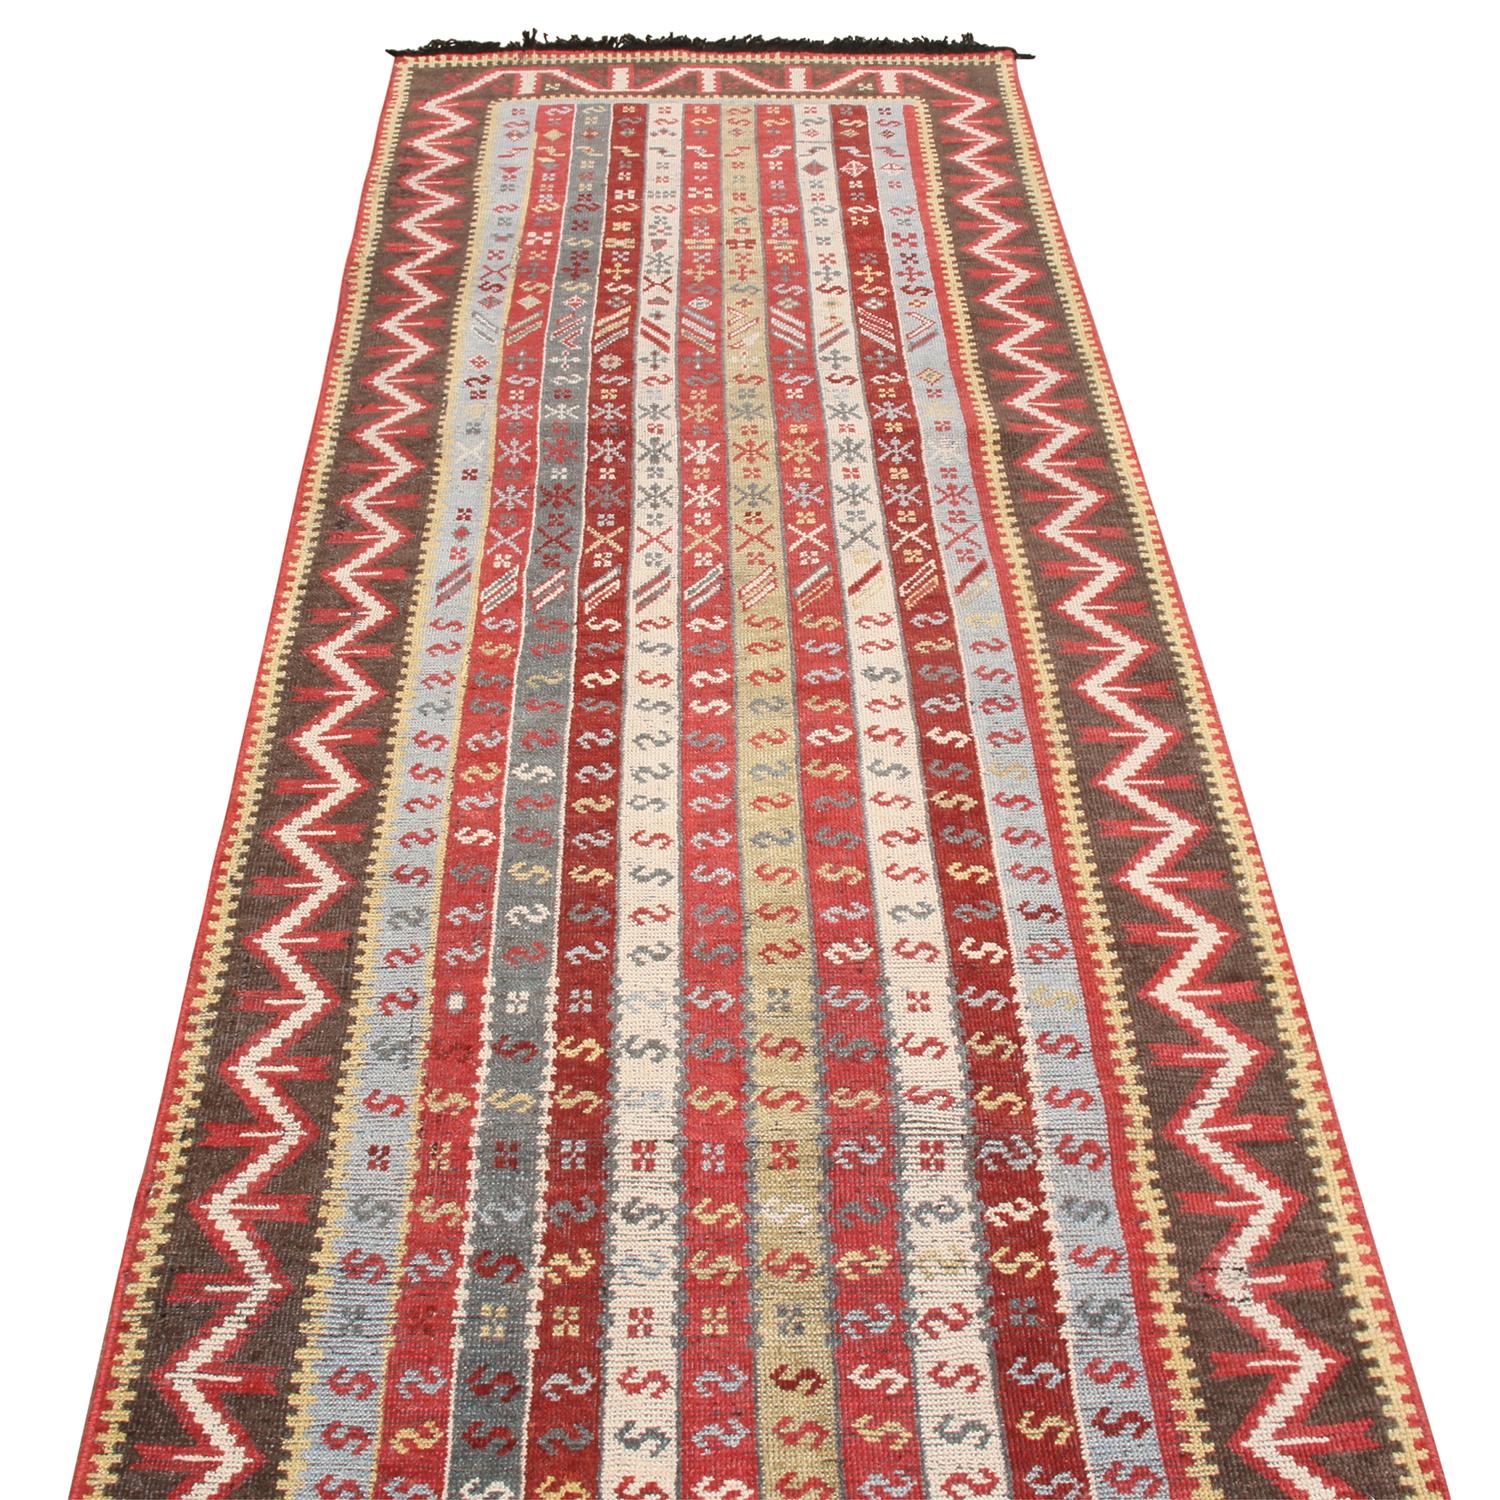 Noué à la main avec de la laine de haute qualité provenant d'Inde, ce tapis contemporain est issu de la collection Burano de Rug & Kilim. Il reprend de manière unique le motif du crochet en 